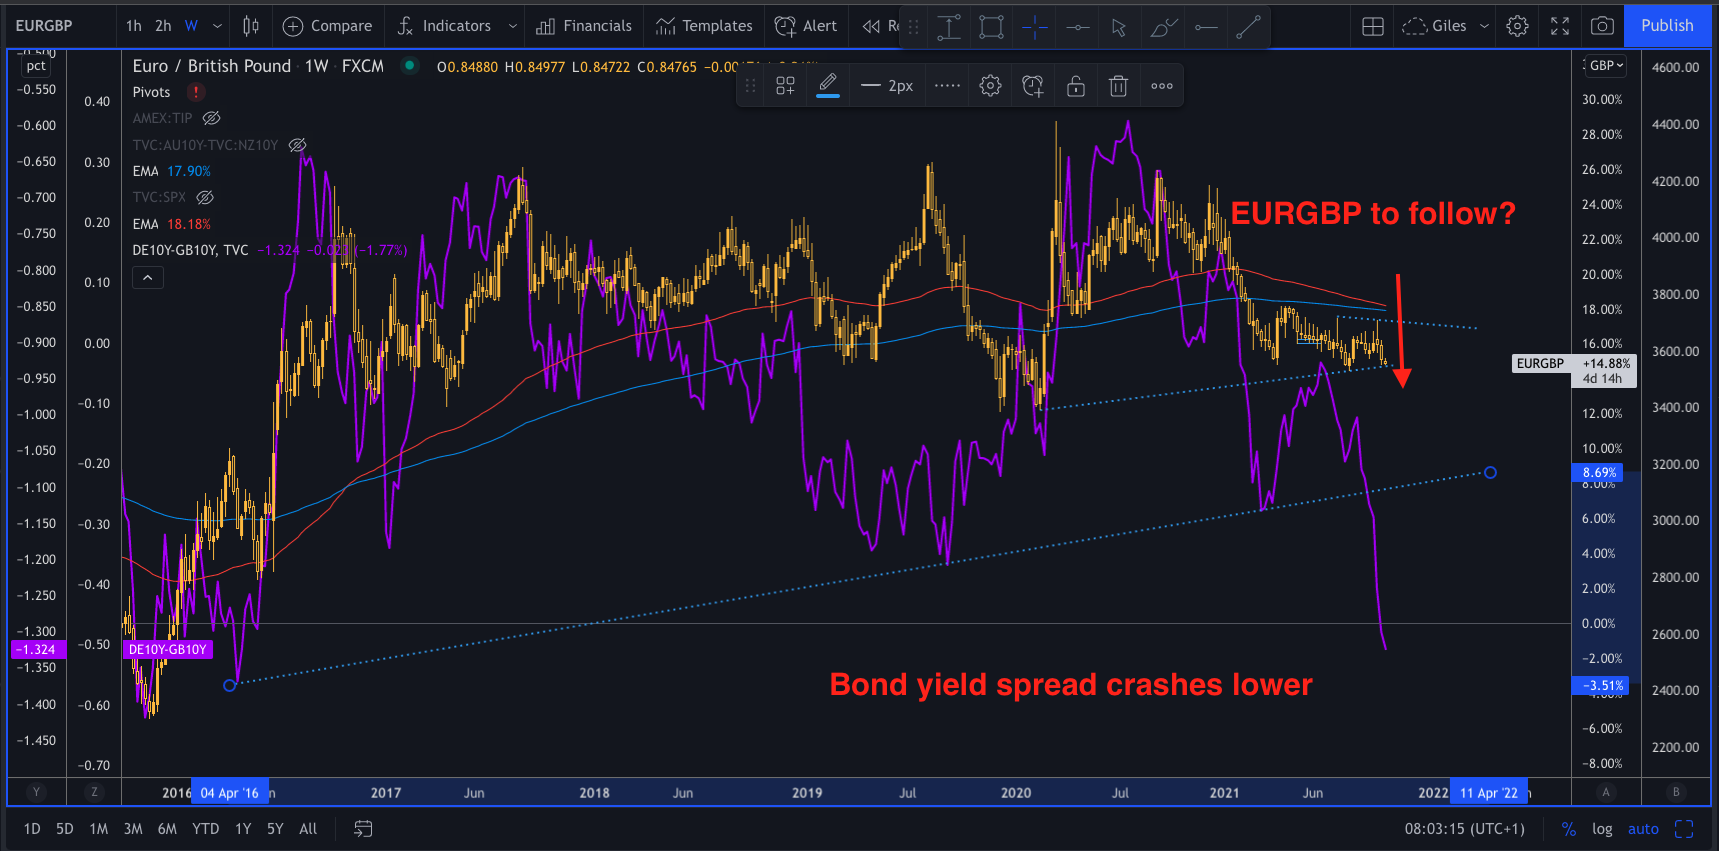 Bond yield spread hint